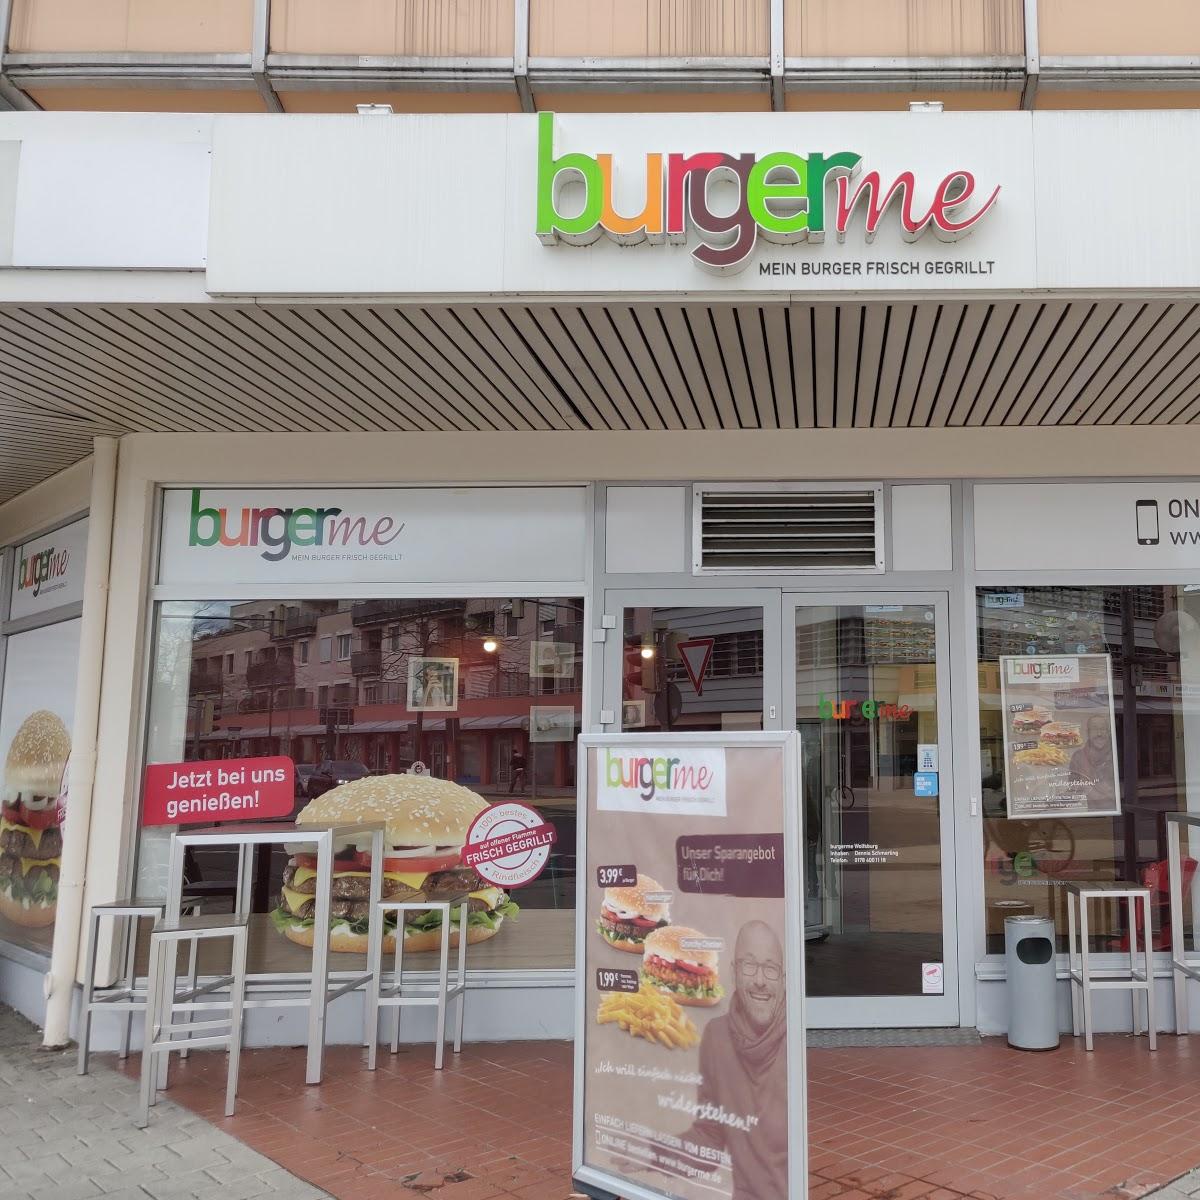 Restaurant "burgerme" in Wolfsburg